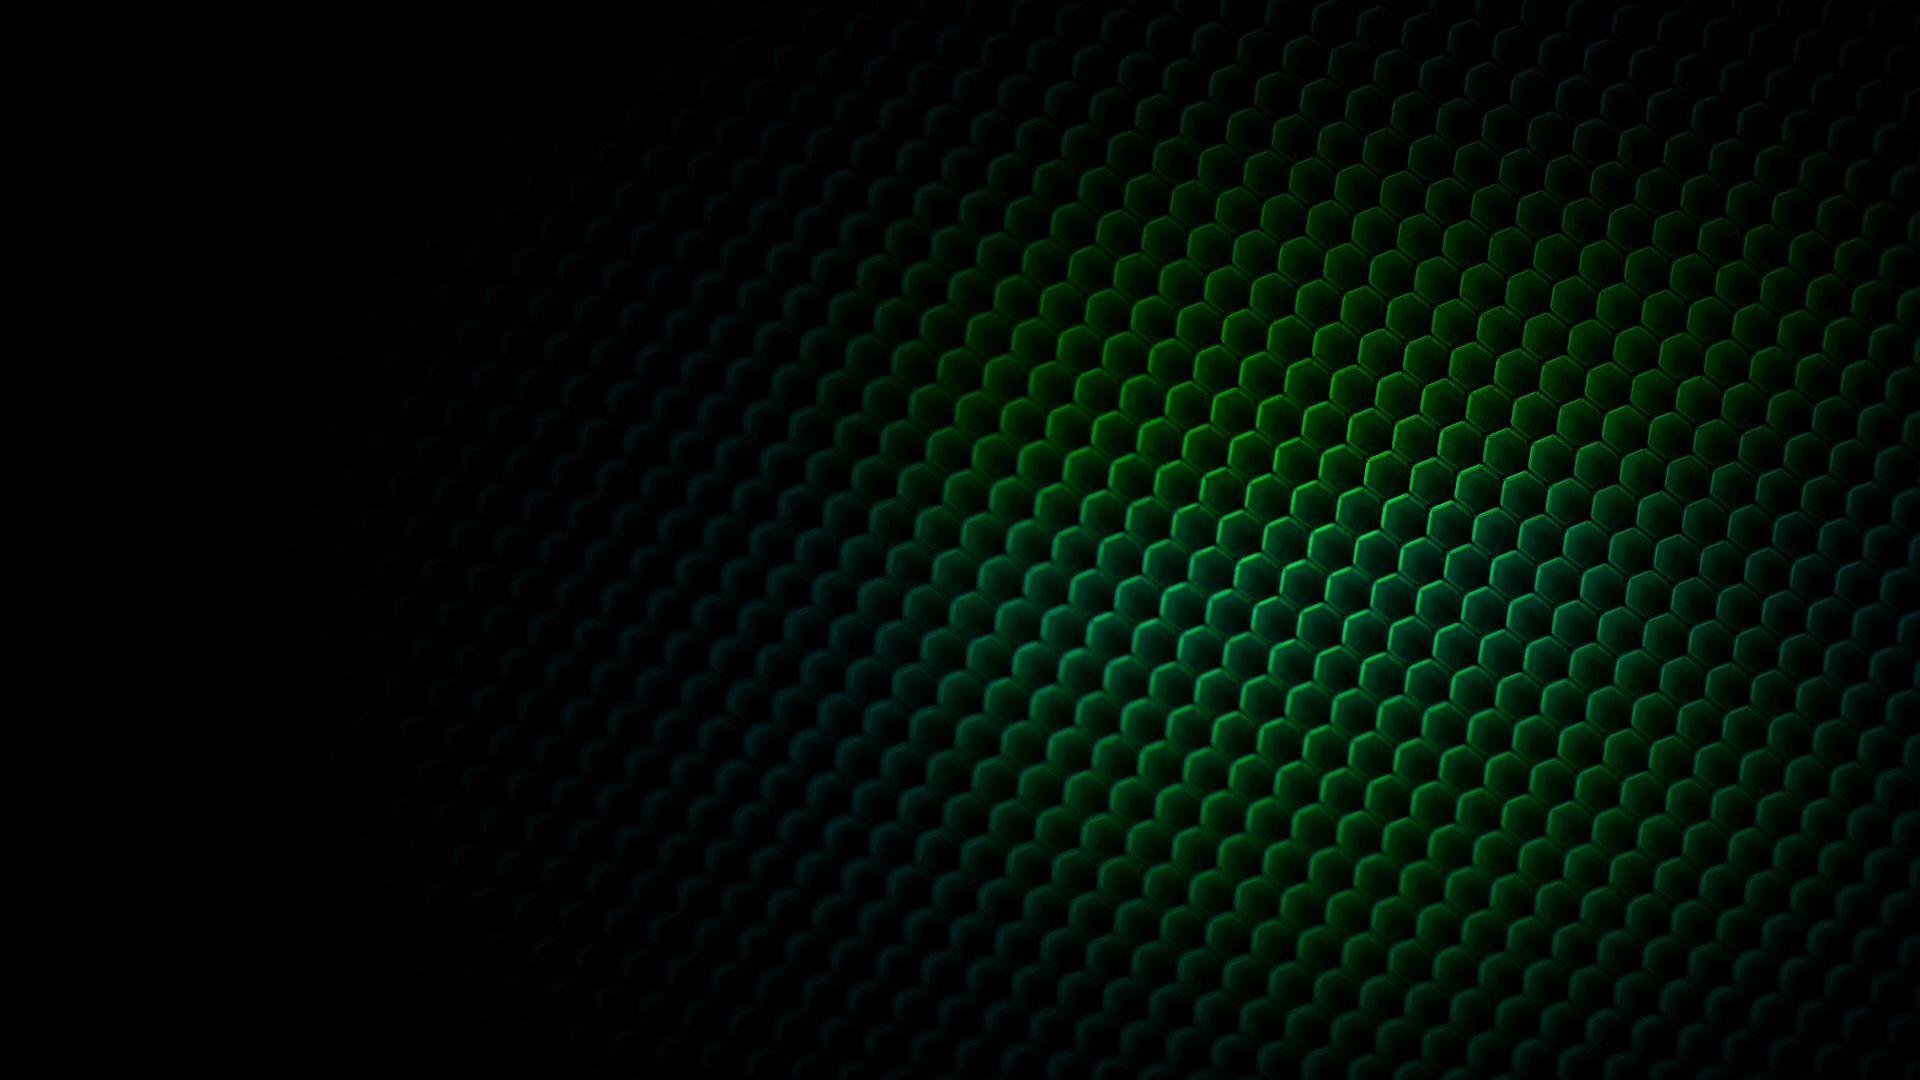 Wallpapers Black Green: Giờ đây, bạn có thể mang trọn không gian thiên nhiên vào máy tính hay điện thoại của mình với bộ ảnh Wallpapers Black Green - không gian màu xanh bí ẩn hòa cùng sắc đen trầm lắng nhưng vô cùng cuốn hút. Bấm vào hình ảnh để tải về và trầm mình trong không gian nghẹt thở này.